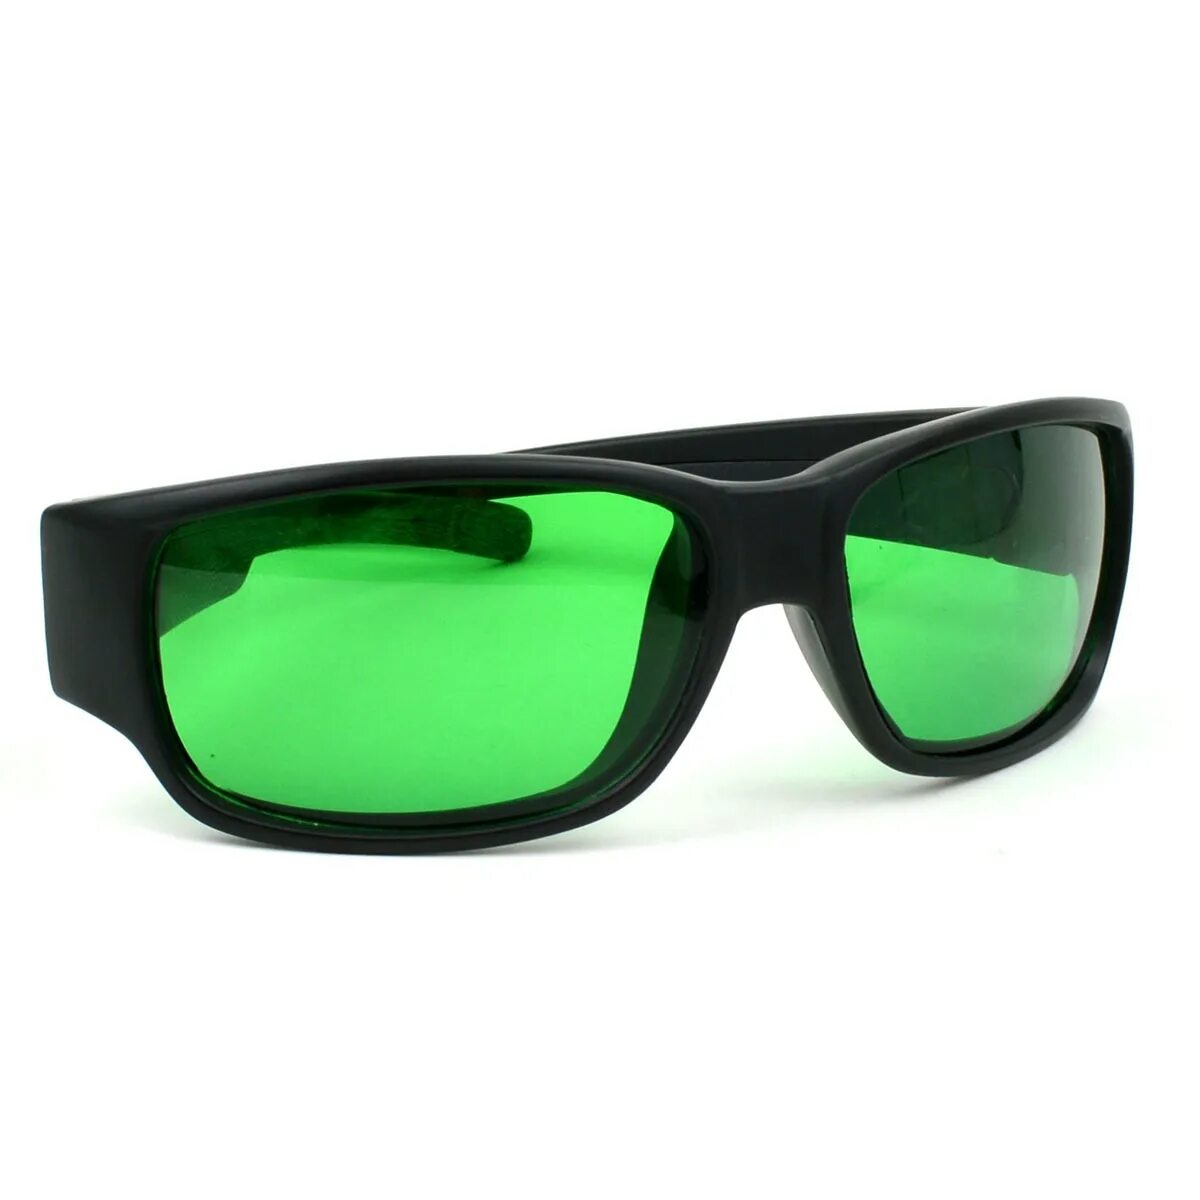 Очки глаукомные поляризационные. Зелёные очки. Салатовые очки. Зеленые солнцезащитные очки. Мужские зеленые очки солнцезащитные